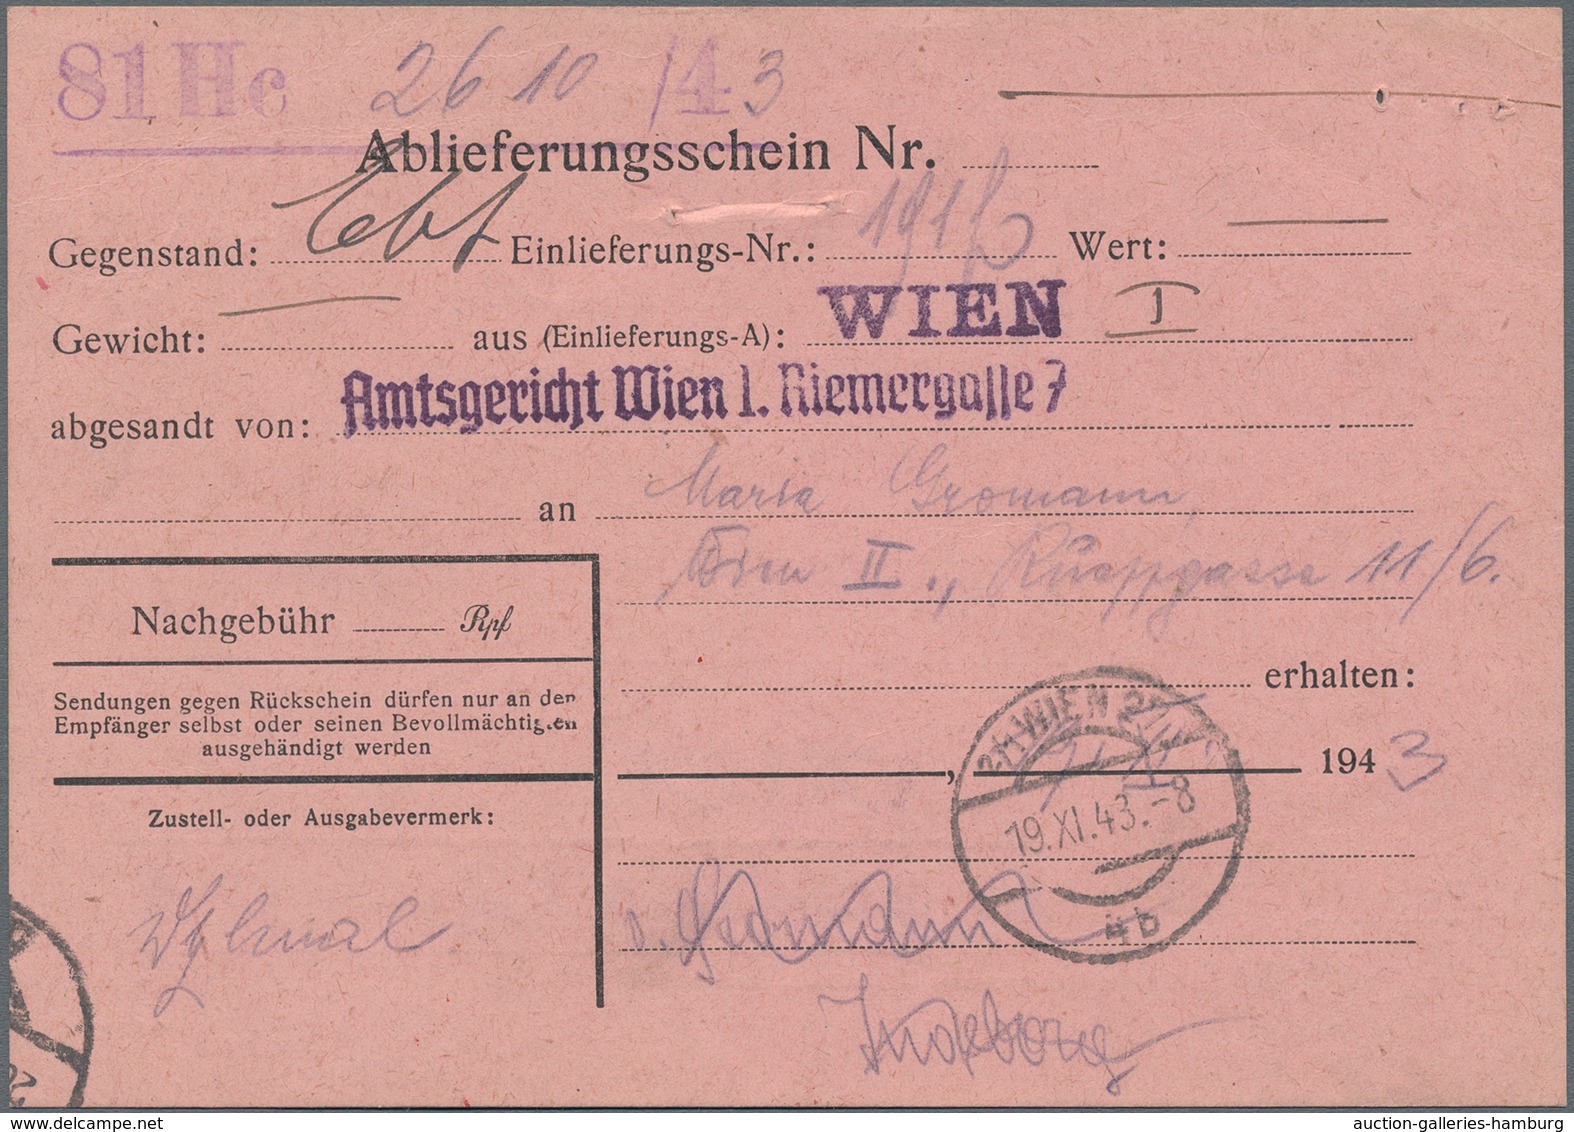 Deutsches Reich - 3. Reich: 1943, 30 Pf Hitler als EF auf R-Gerichtsbrief mit Rückschein in WIEN inc